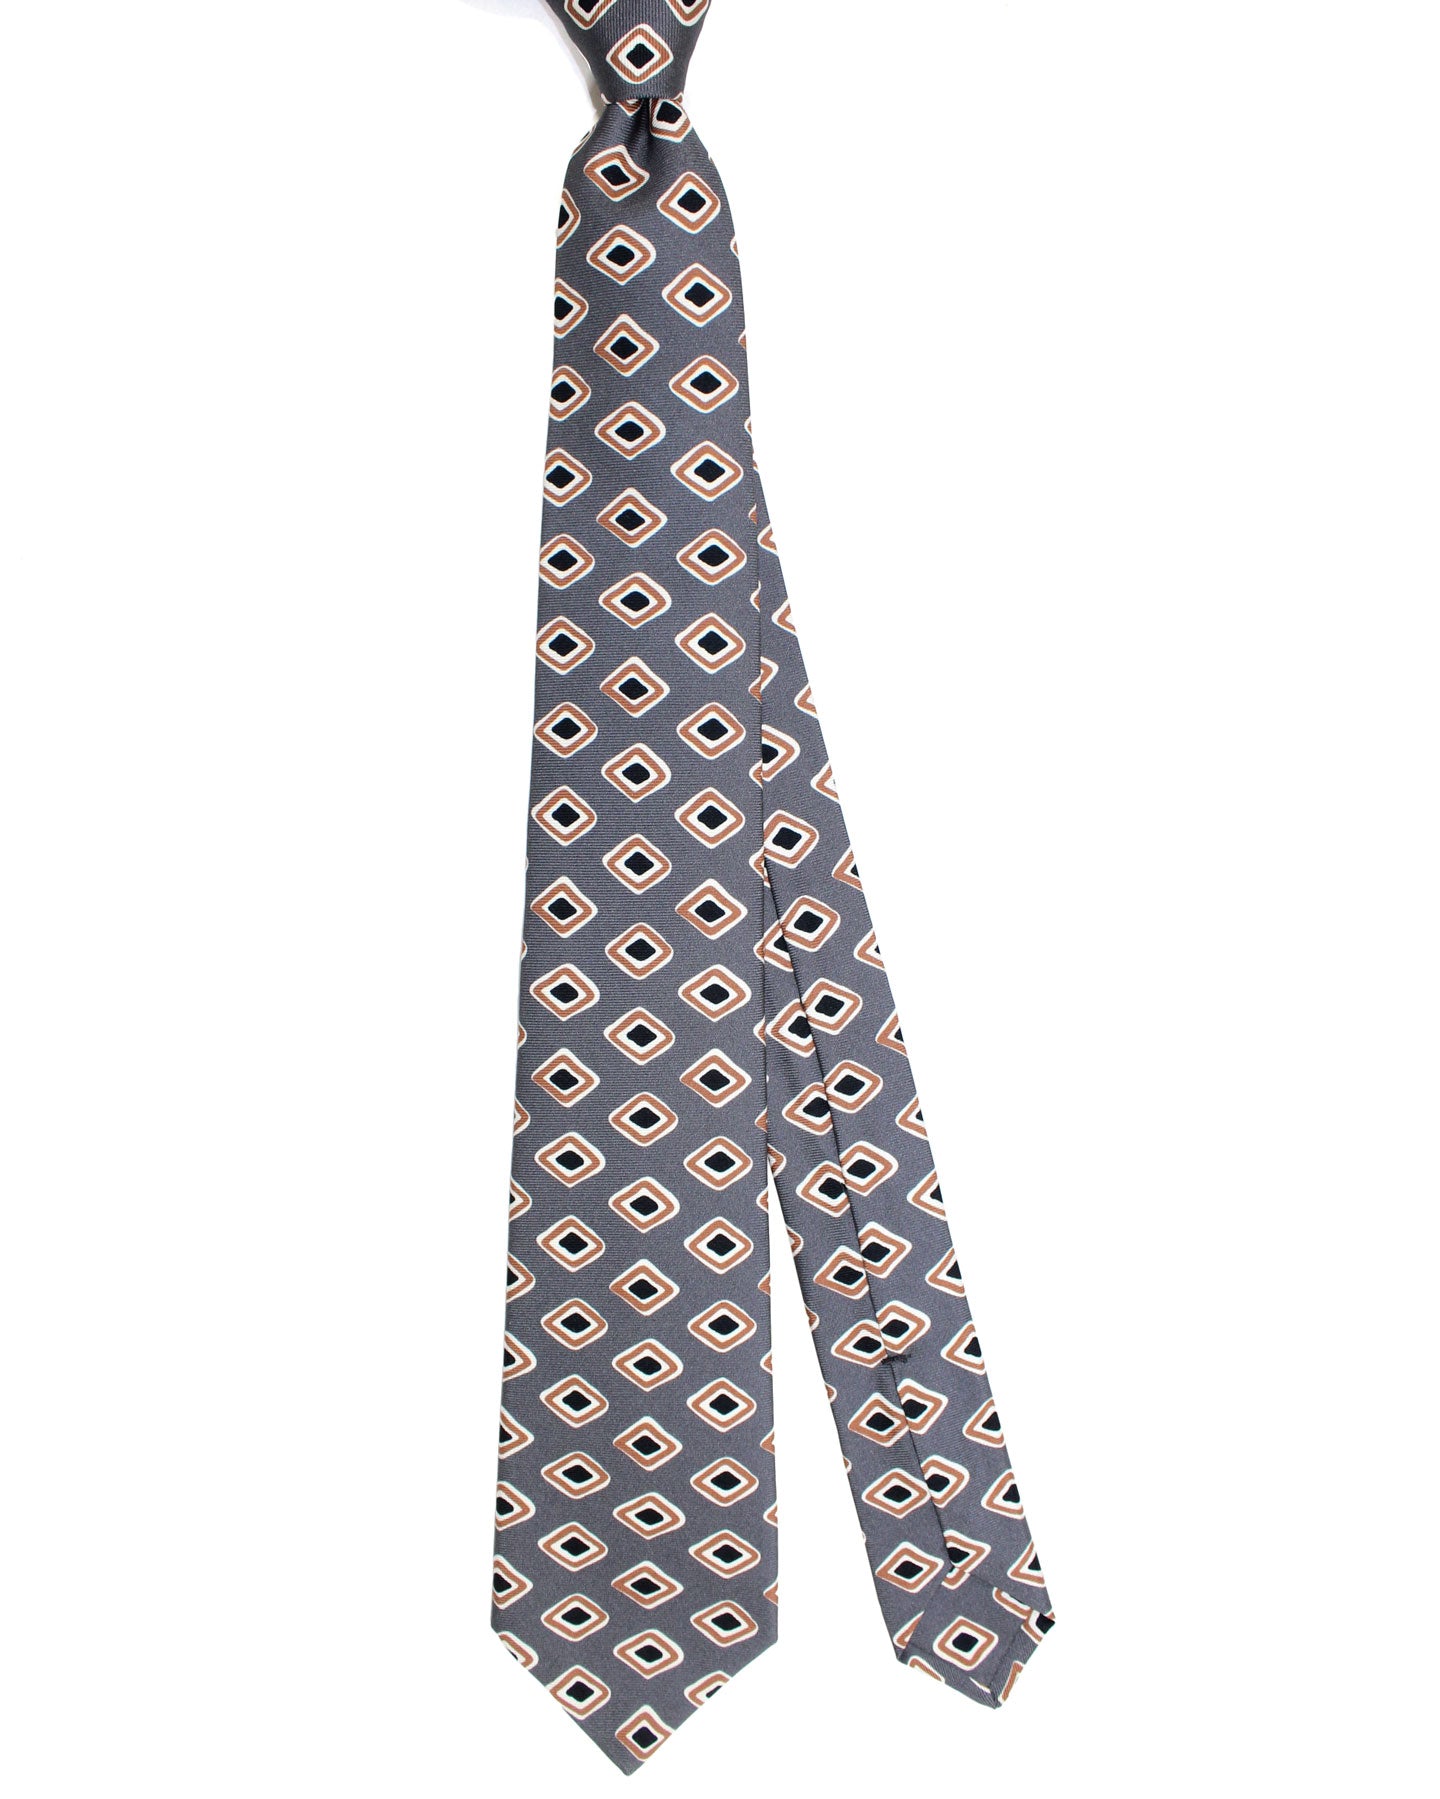 Kiton Silk Tie Gray Brown Design - Sevenfold Necktie